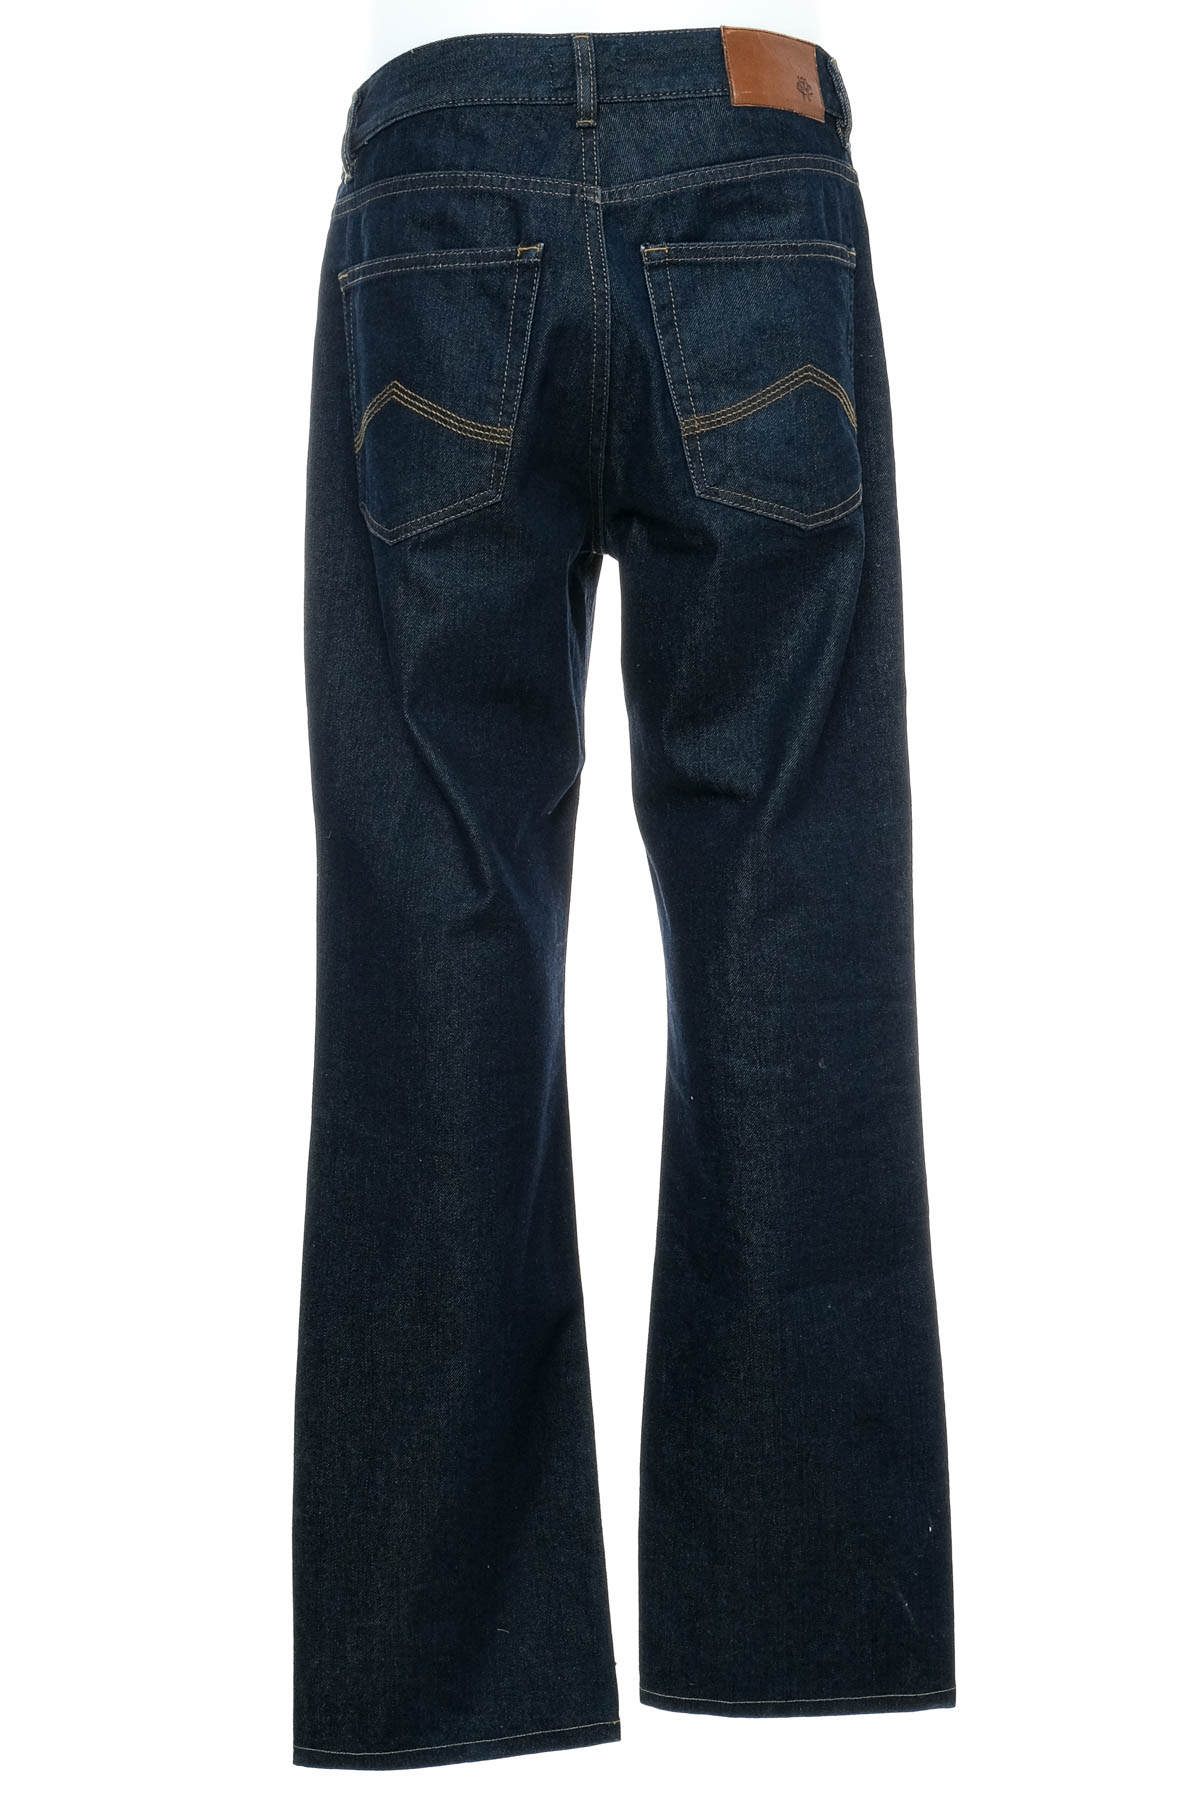 Jeans pentru bărbăți - MCNEAL - 1